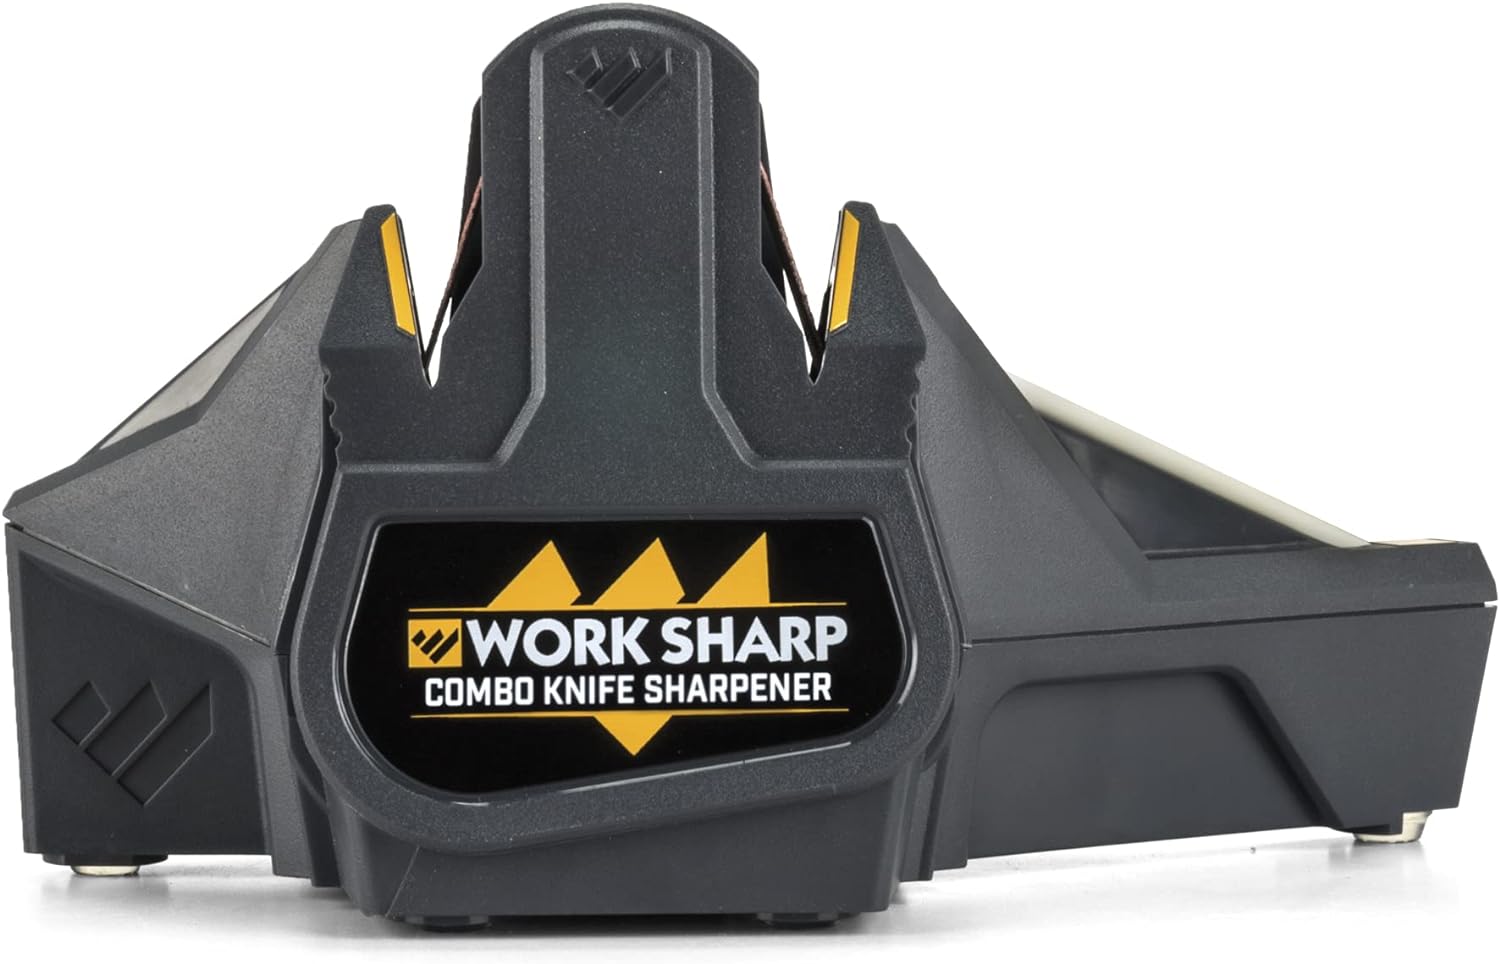 RAIACE Hard Travel Carrying Case for Work Sharp Guided Field Sharpener Black